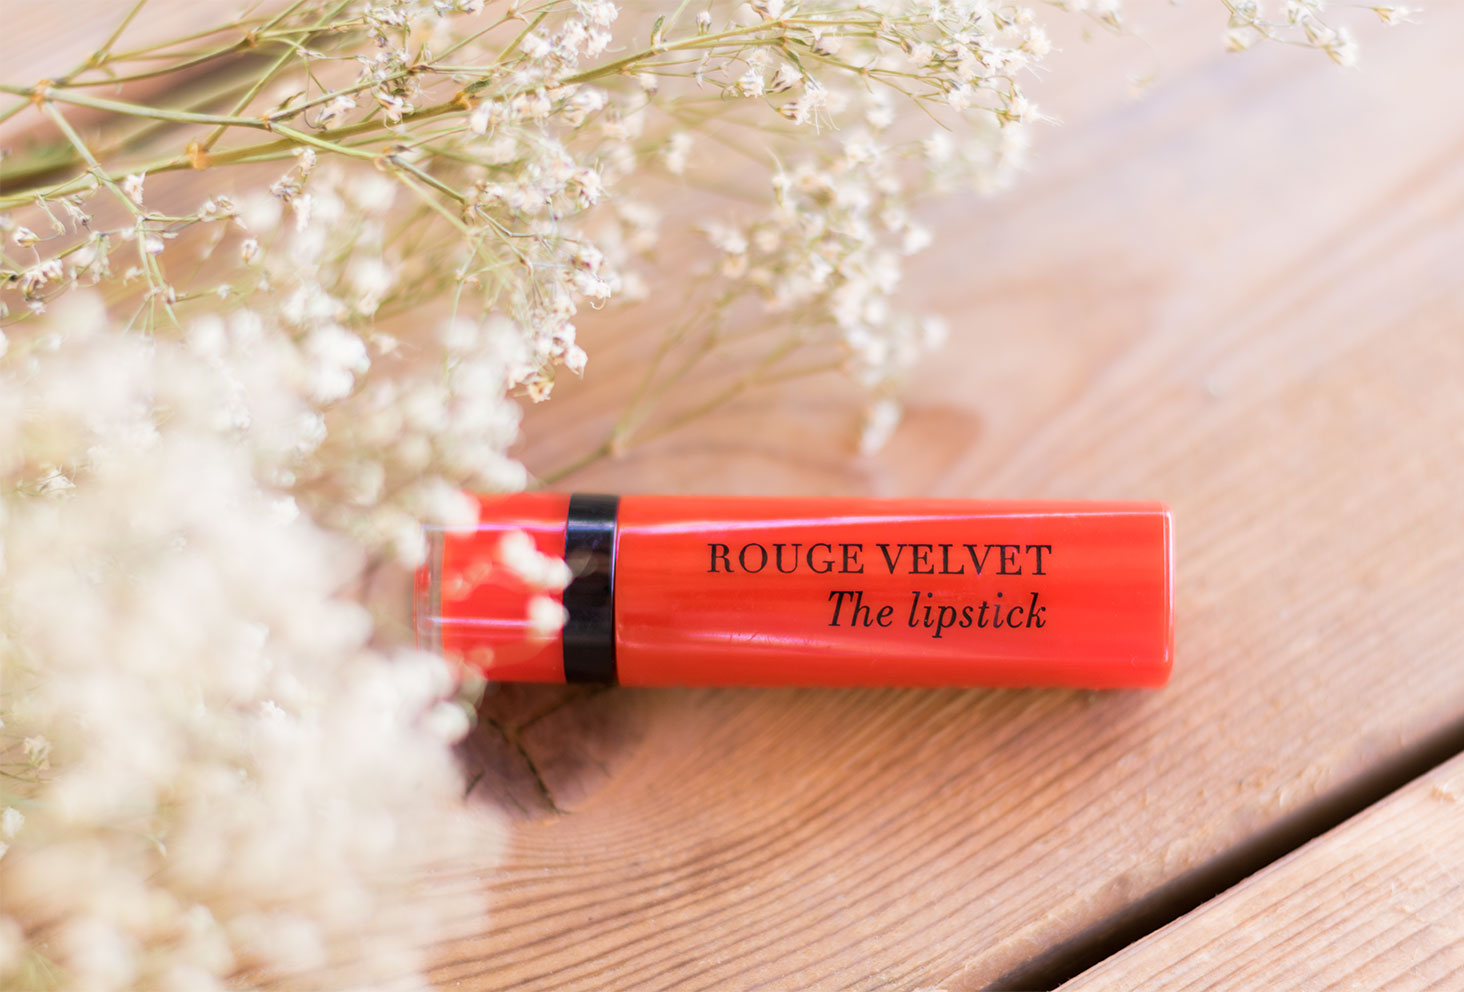 Rouge à lèvres rouge Velvet The Lipstick de Bourjois, sur une table en bois au milieu des fleurs séchées blanches